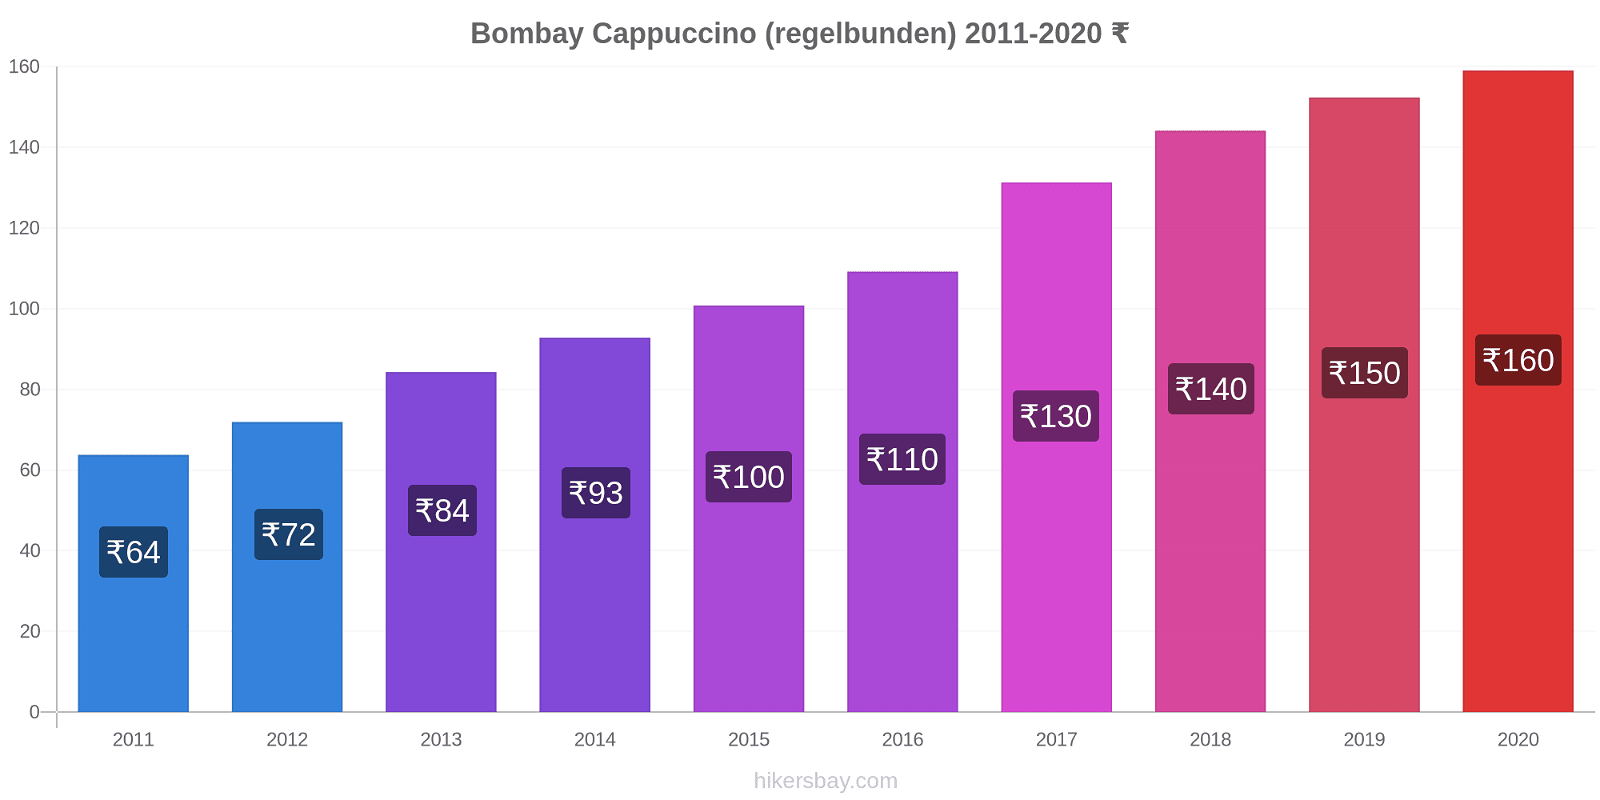 Bombay prisförändringar Cappuccino (regelbunden) hikersbay.com